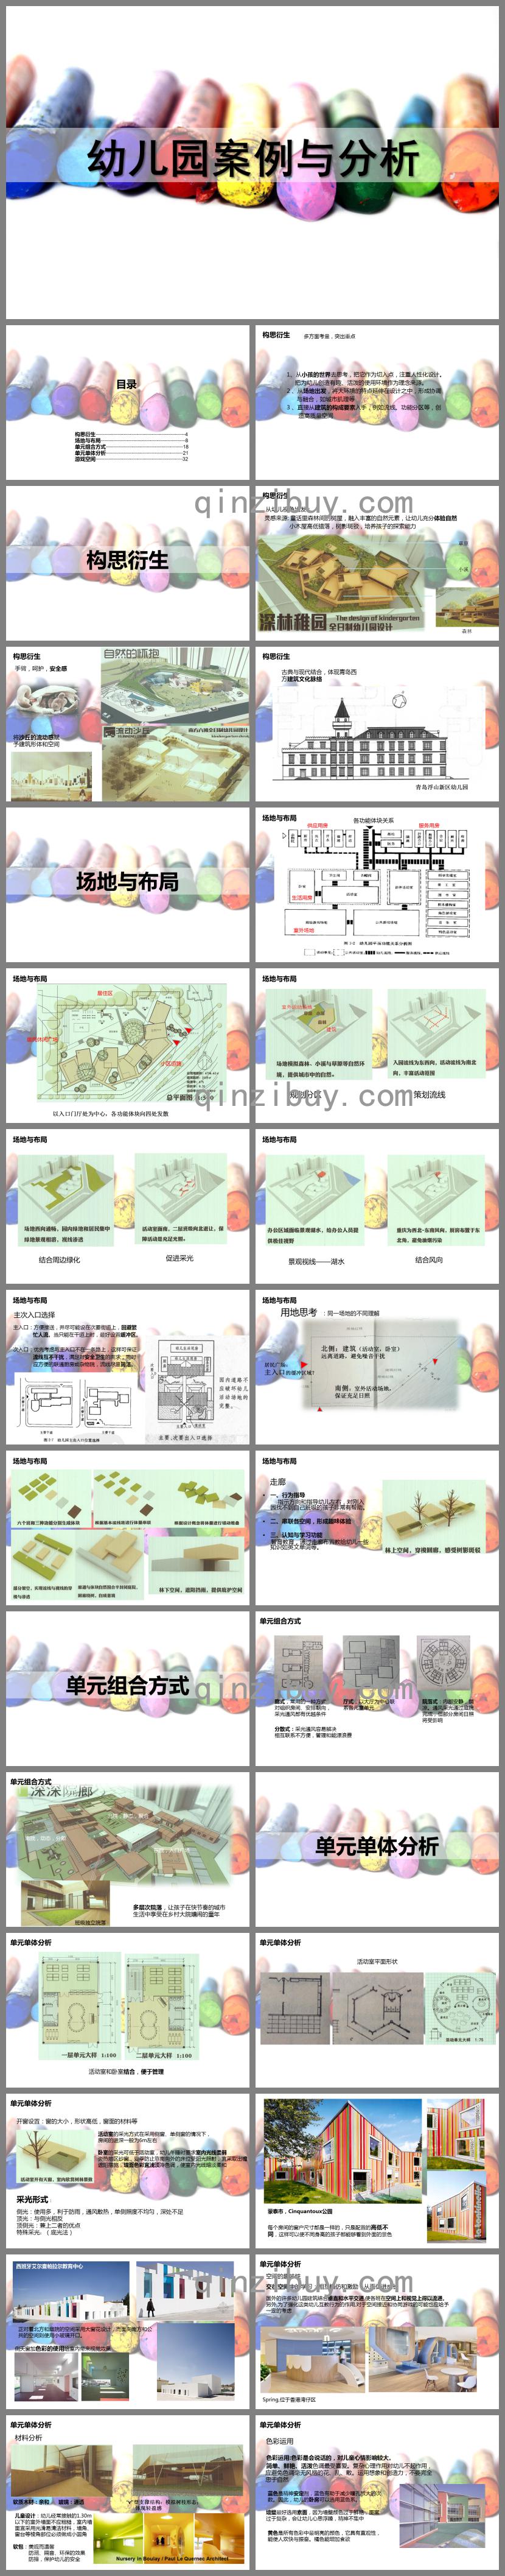 幼儿园设计案例与分析PPT课件